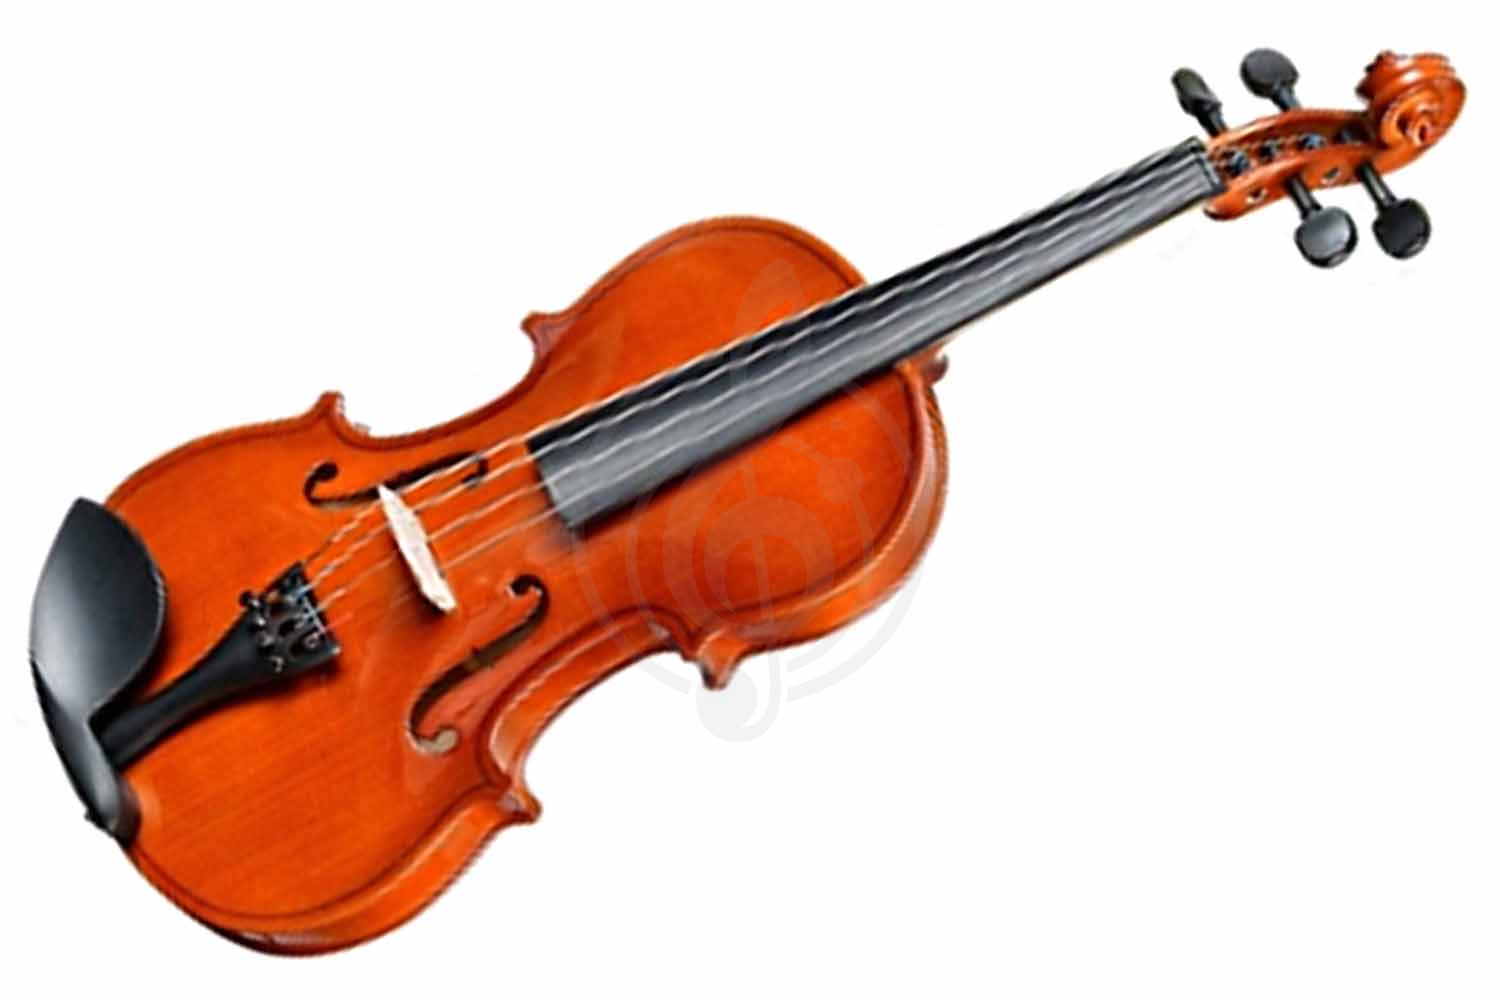 Скрипка 1/4 Скрипки 1/4 ANTONIO LAVAZZA Скрипка ANTONIO LAVAZZA VL-28M размер 1/4 VL-28M-1/4 - фото 1